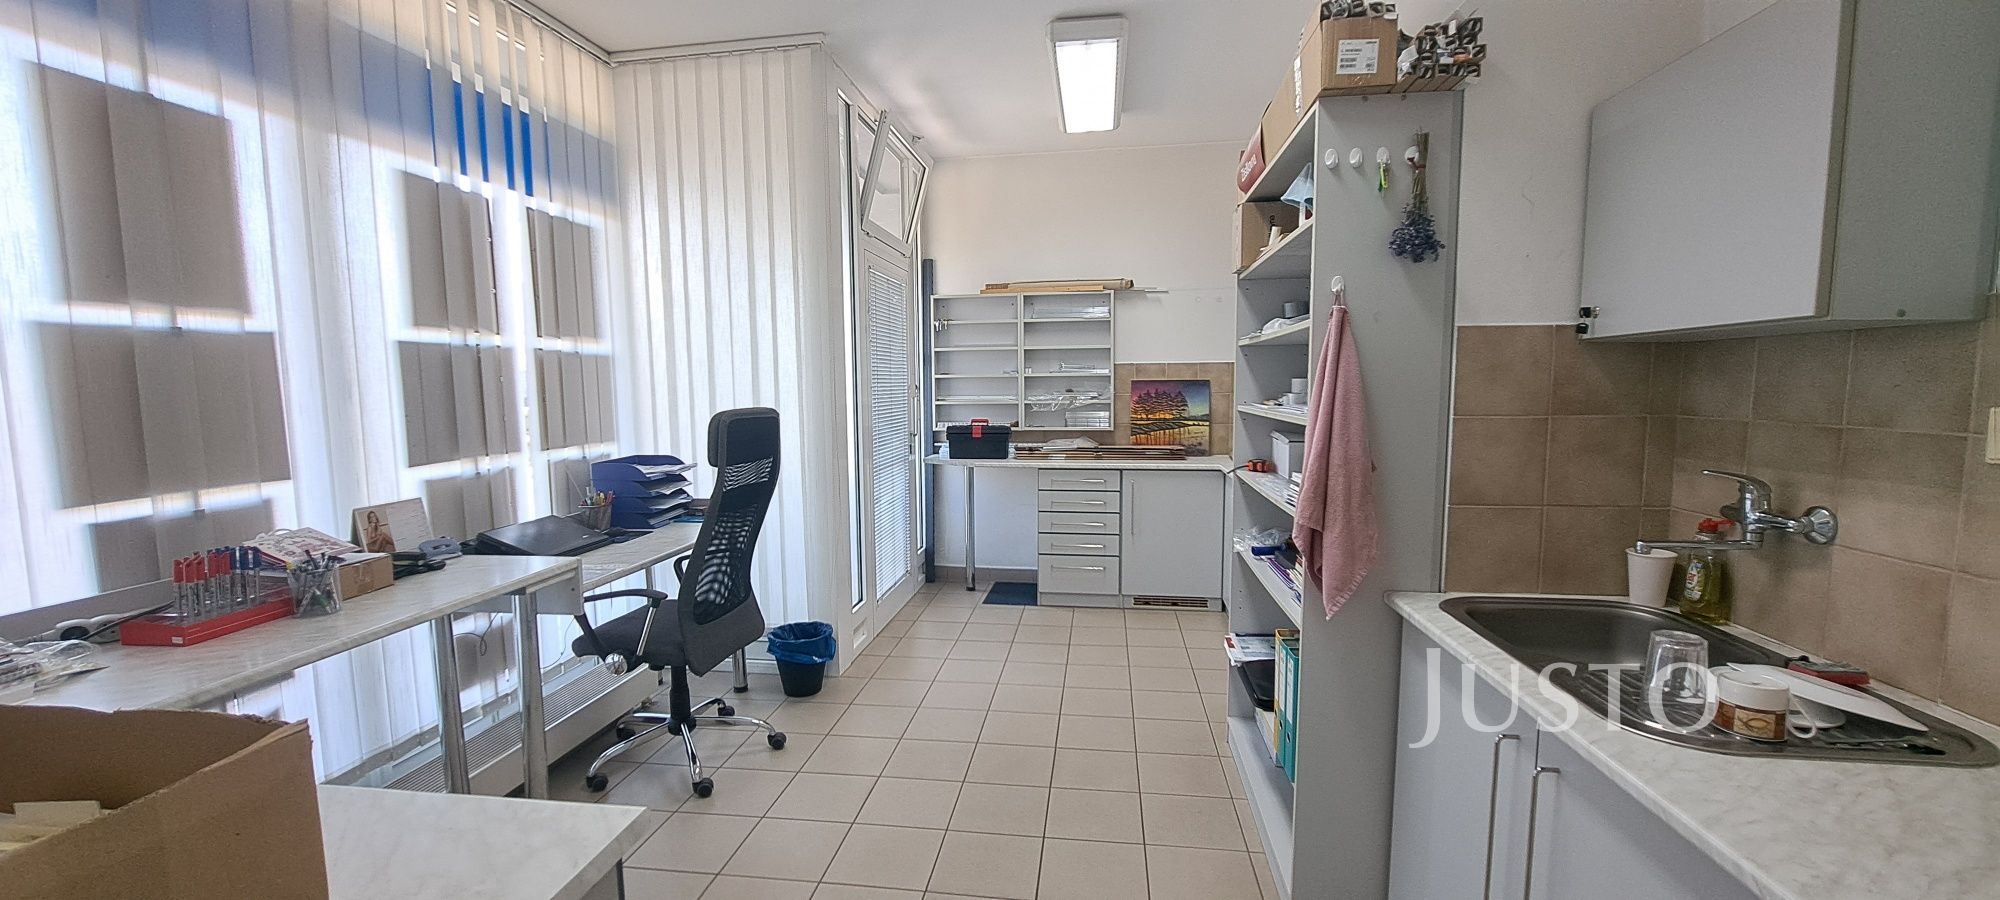 Pronájem kanceláře 16 m², Písek - Čechova